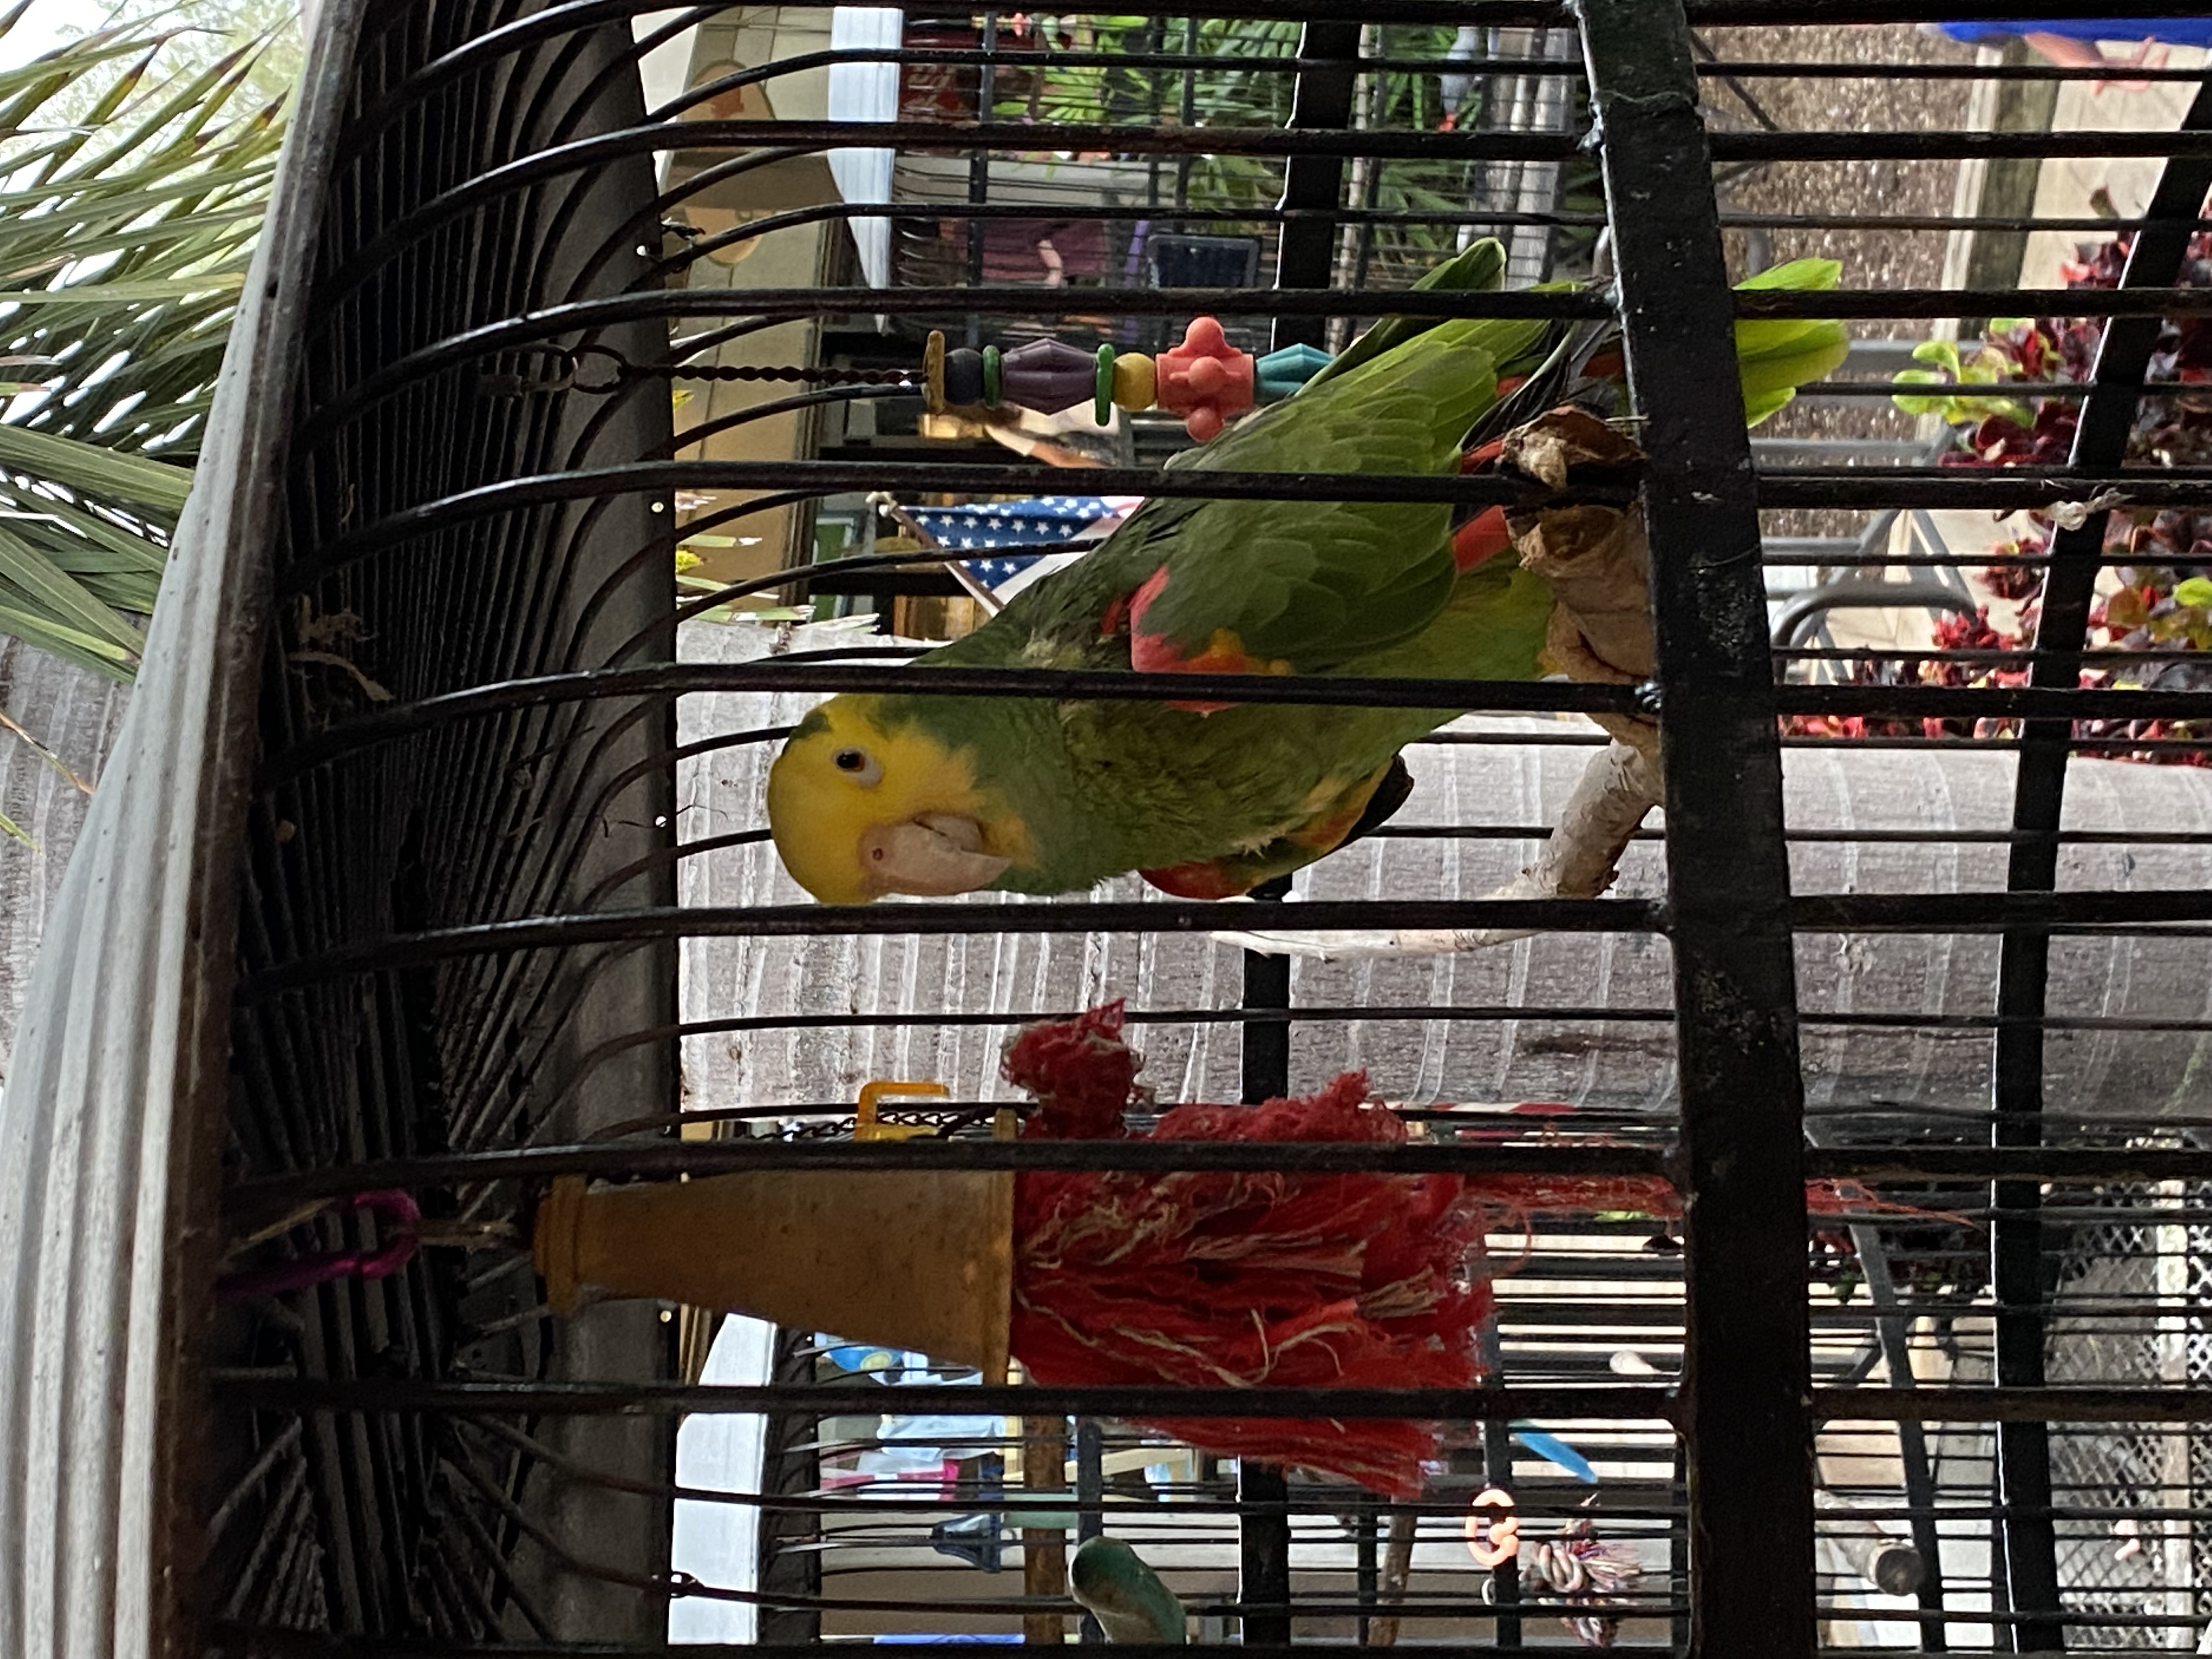 Jerry's Market parrot